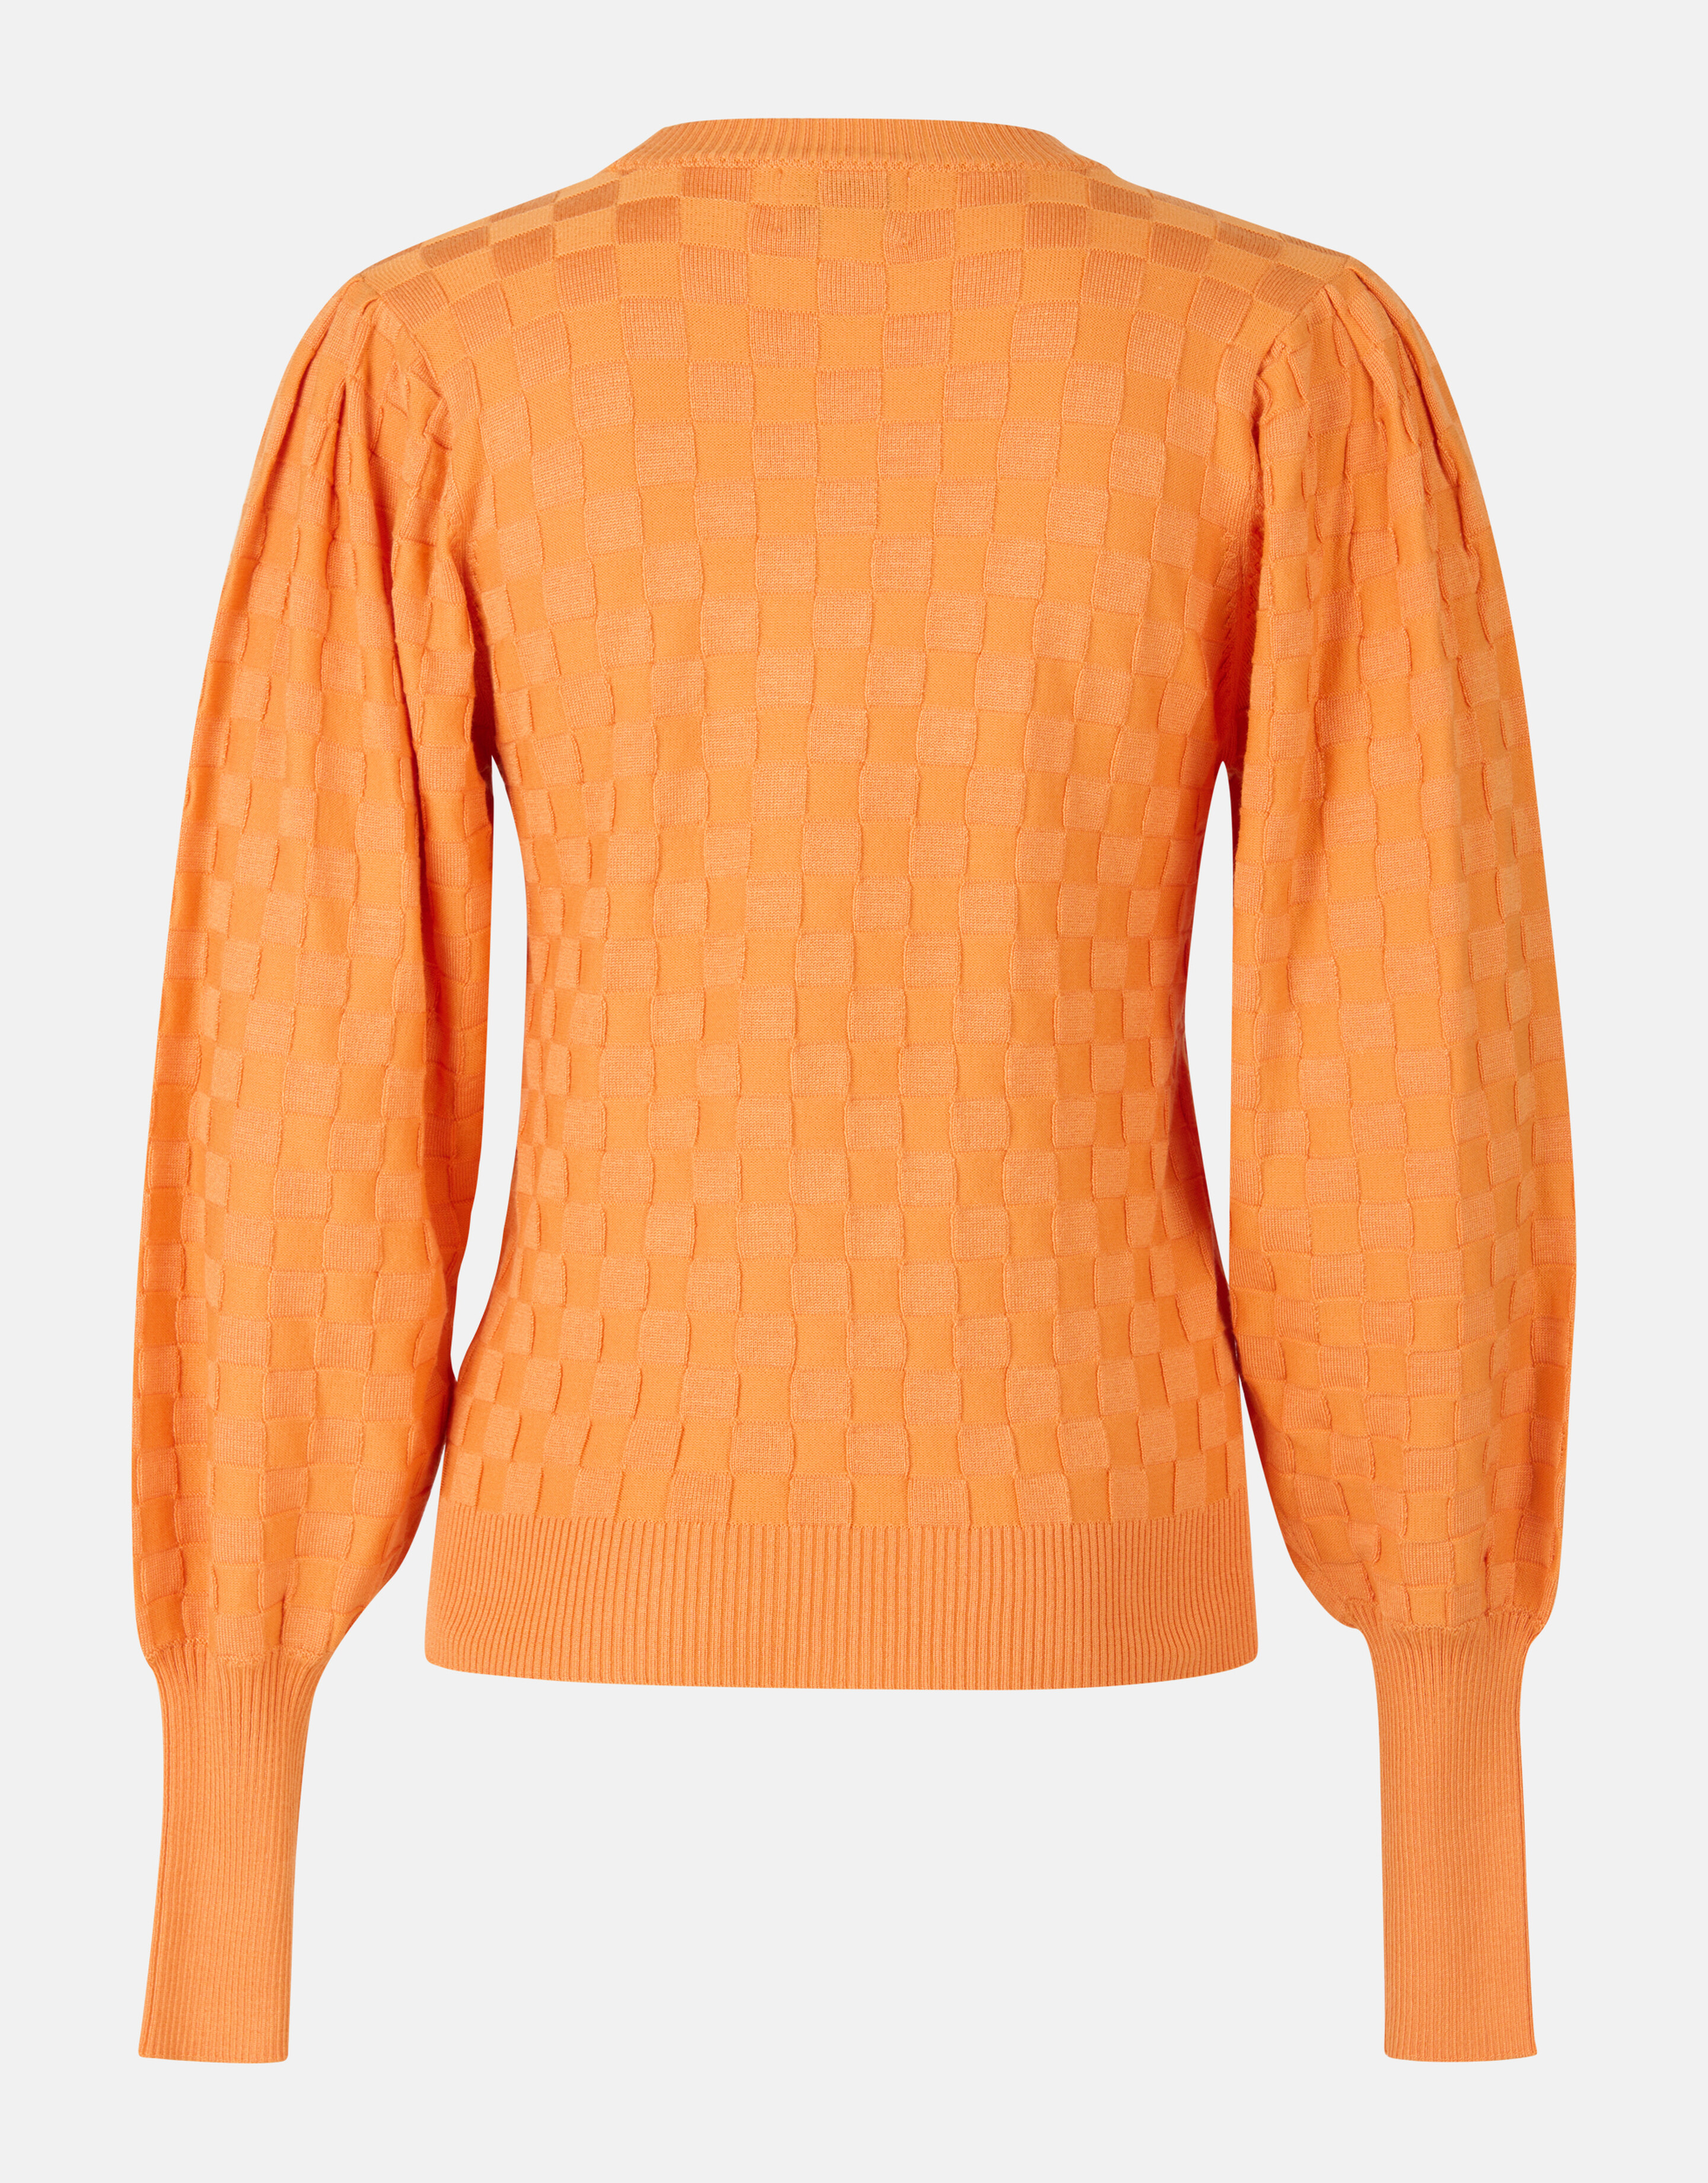 Plaid Print Pullover Orange von Mieke SHOEBY WOMEN